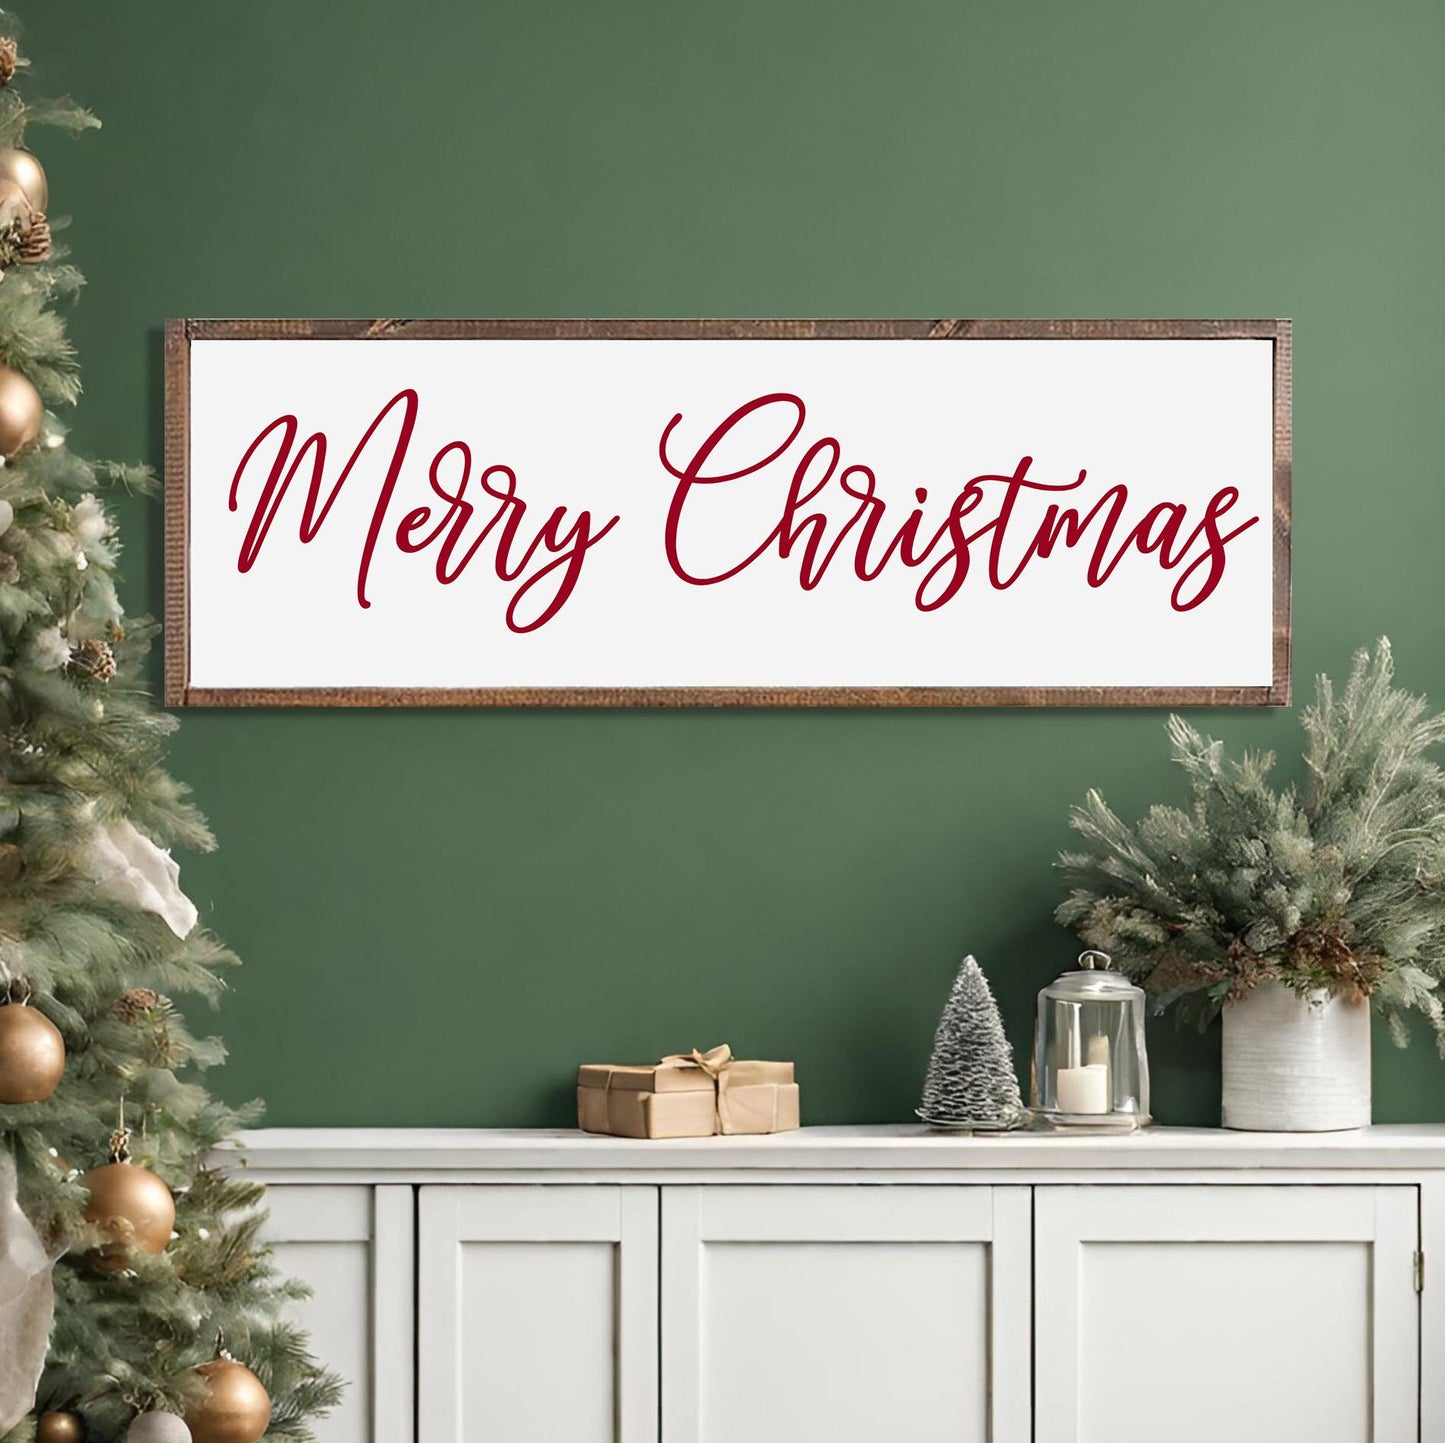 MERRY CHRISTMAS SIGN - Christmas Home Décor, Modern Farmhouse Wood Sign | Large Christmas sign | Christmas Décor, Christian Wall Art